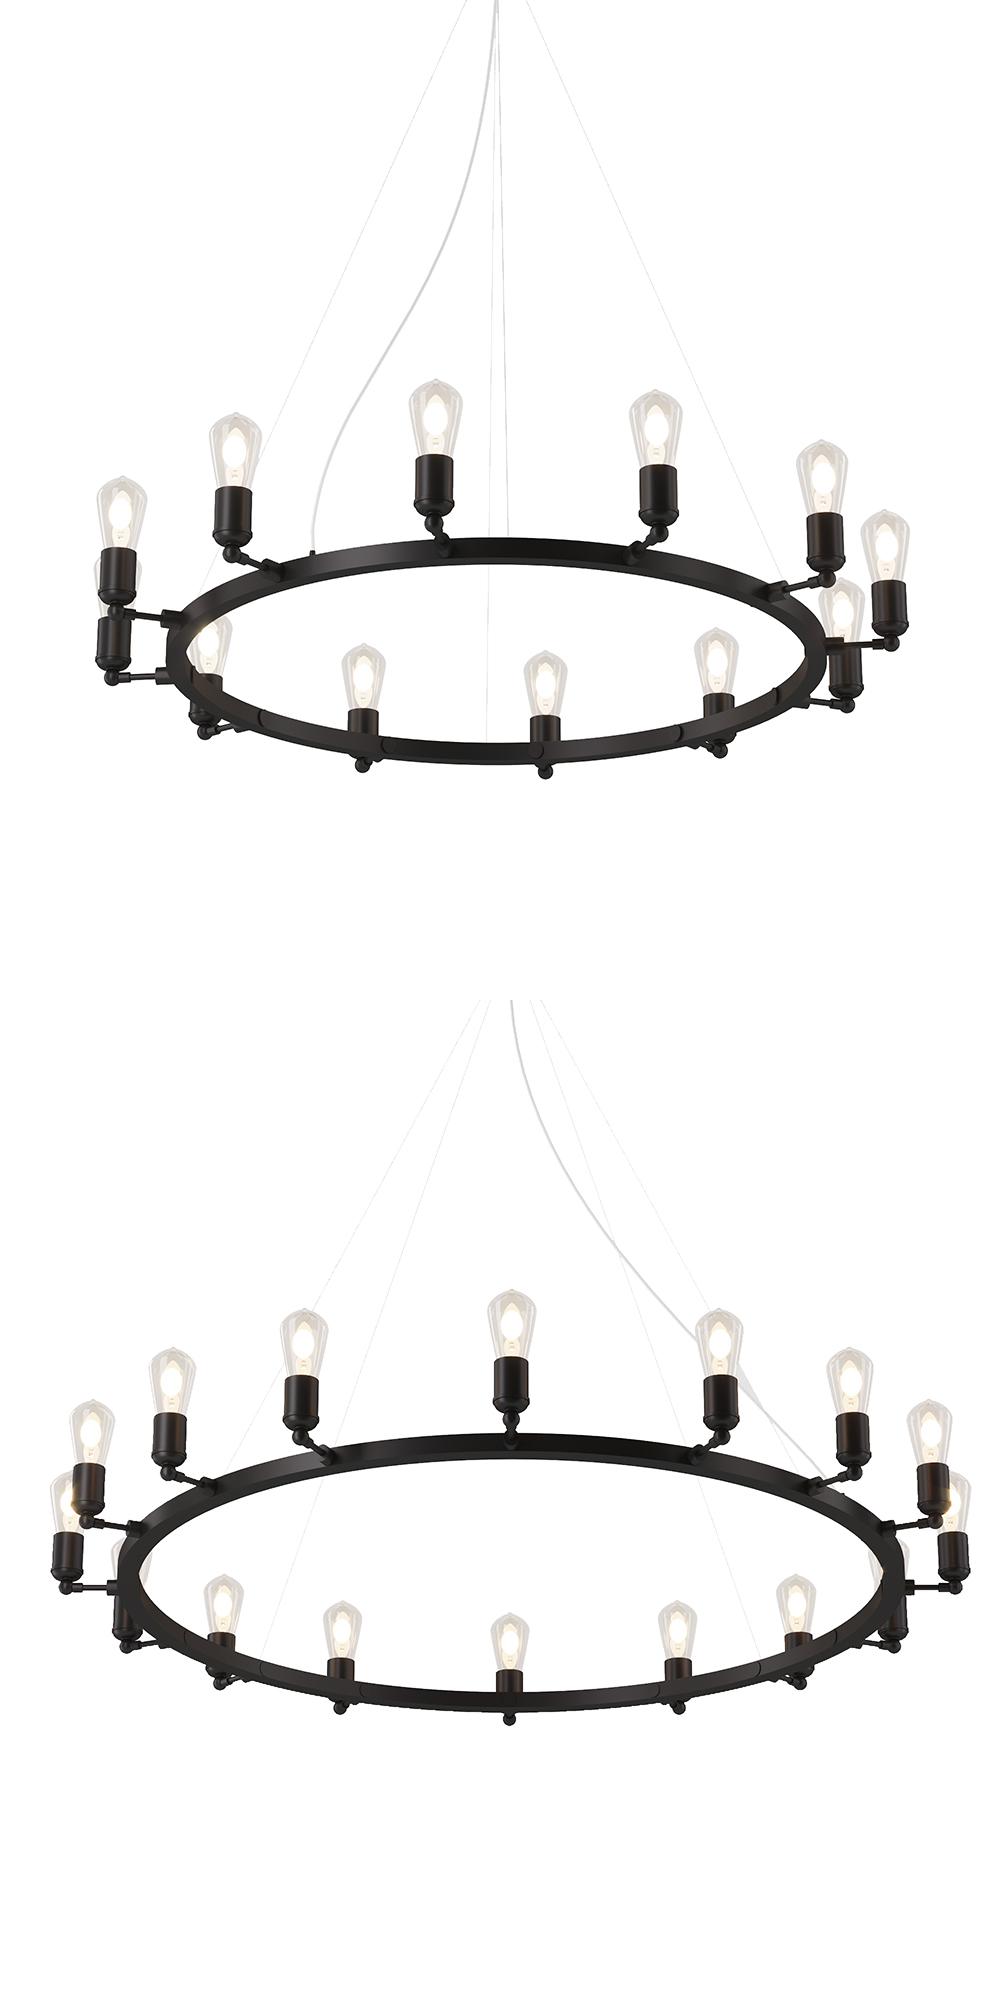 Circle lamp, SKU. 4729 by Pikartlights 3d model